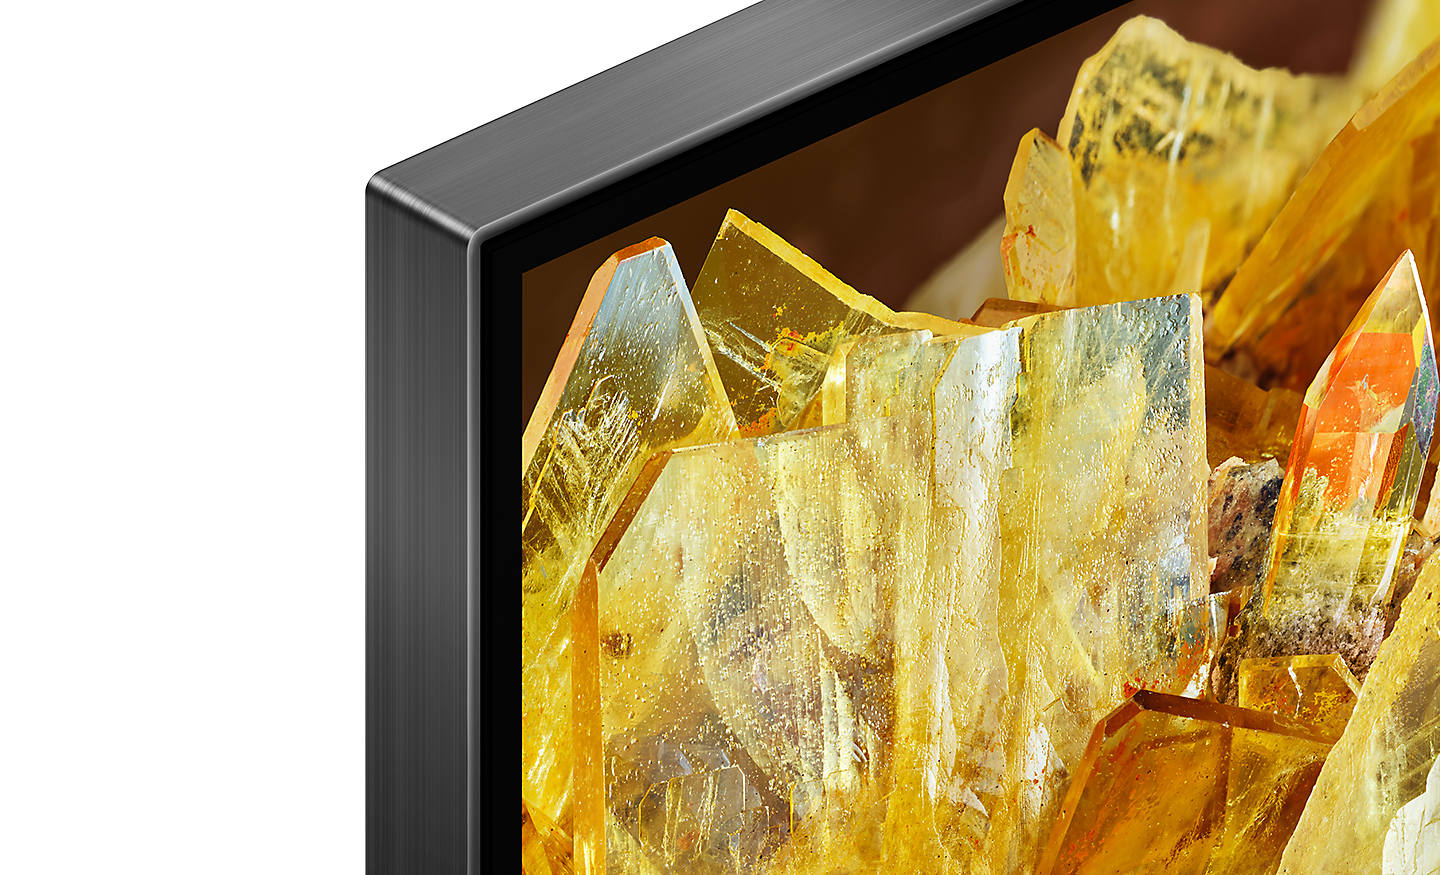 Hoek van tv met in beeld gouden kristallen